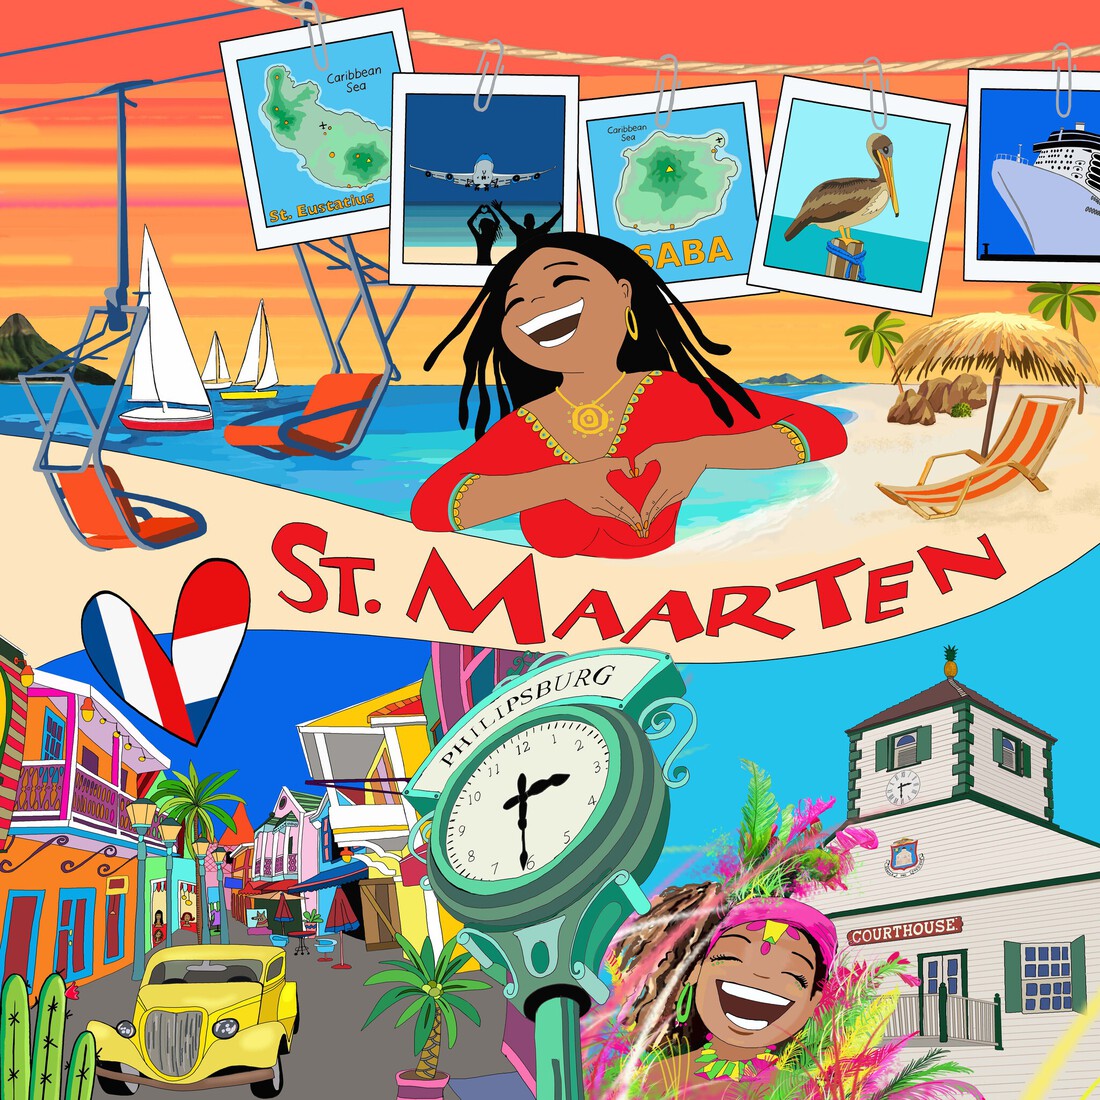 St Maarten